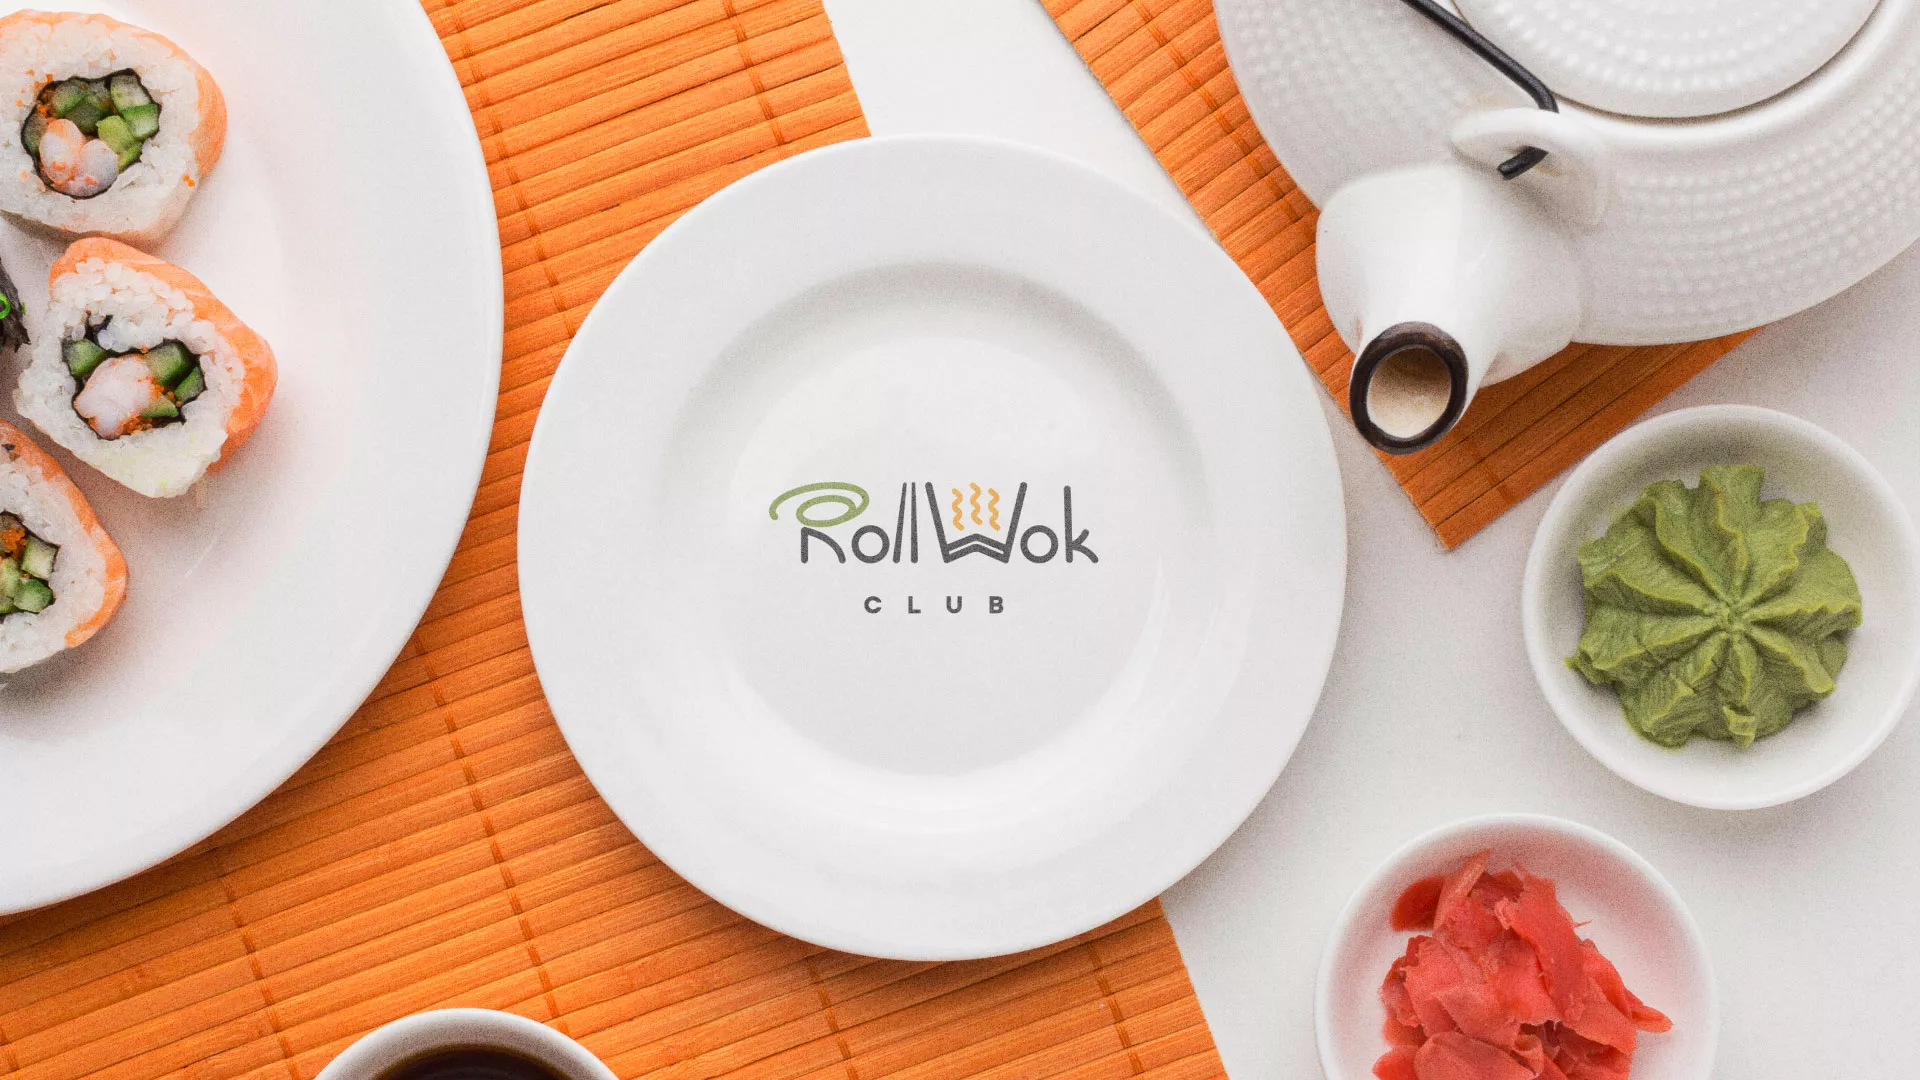 Разработка логотипа и фирменного стиля суши-бара «Roll Wok Club» в Владимире